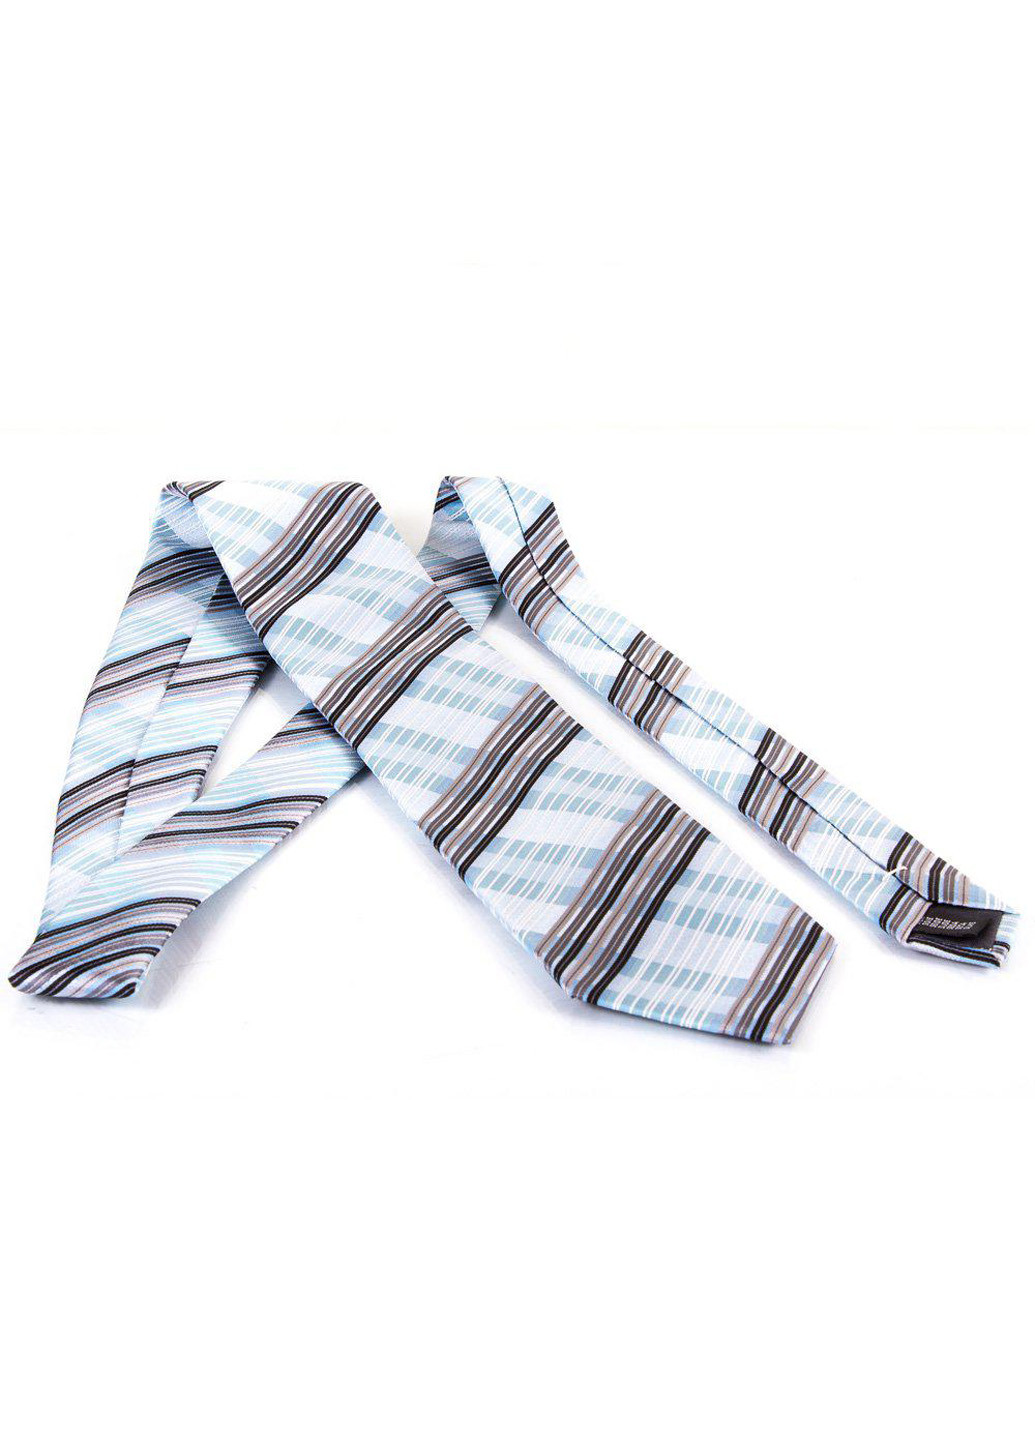 Мужской шелковый галстук 150 см Schonau & Houcken (195538510)